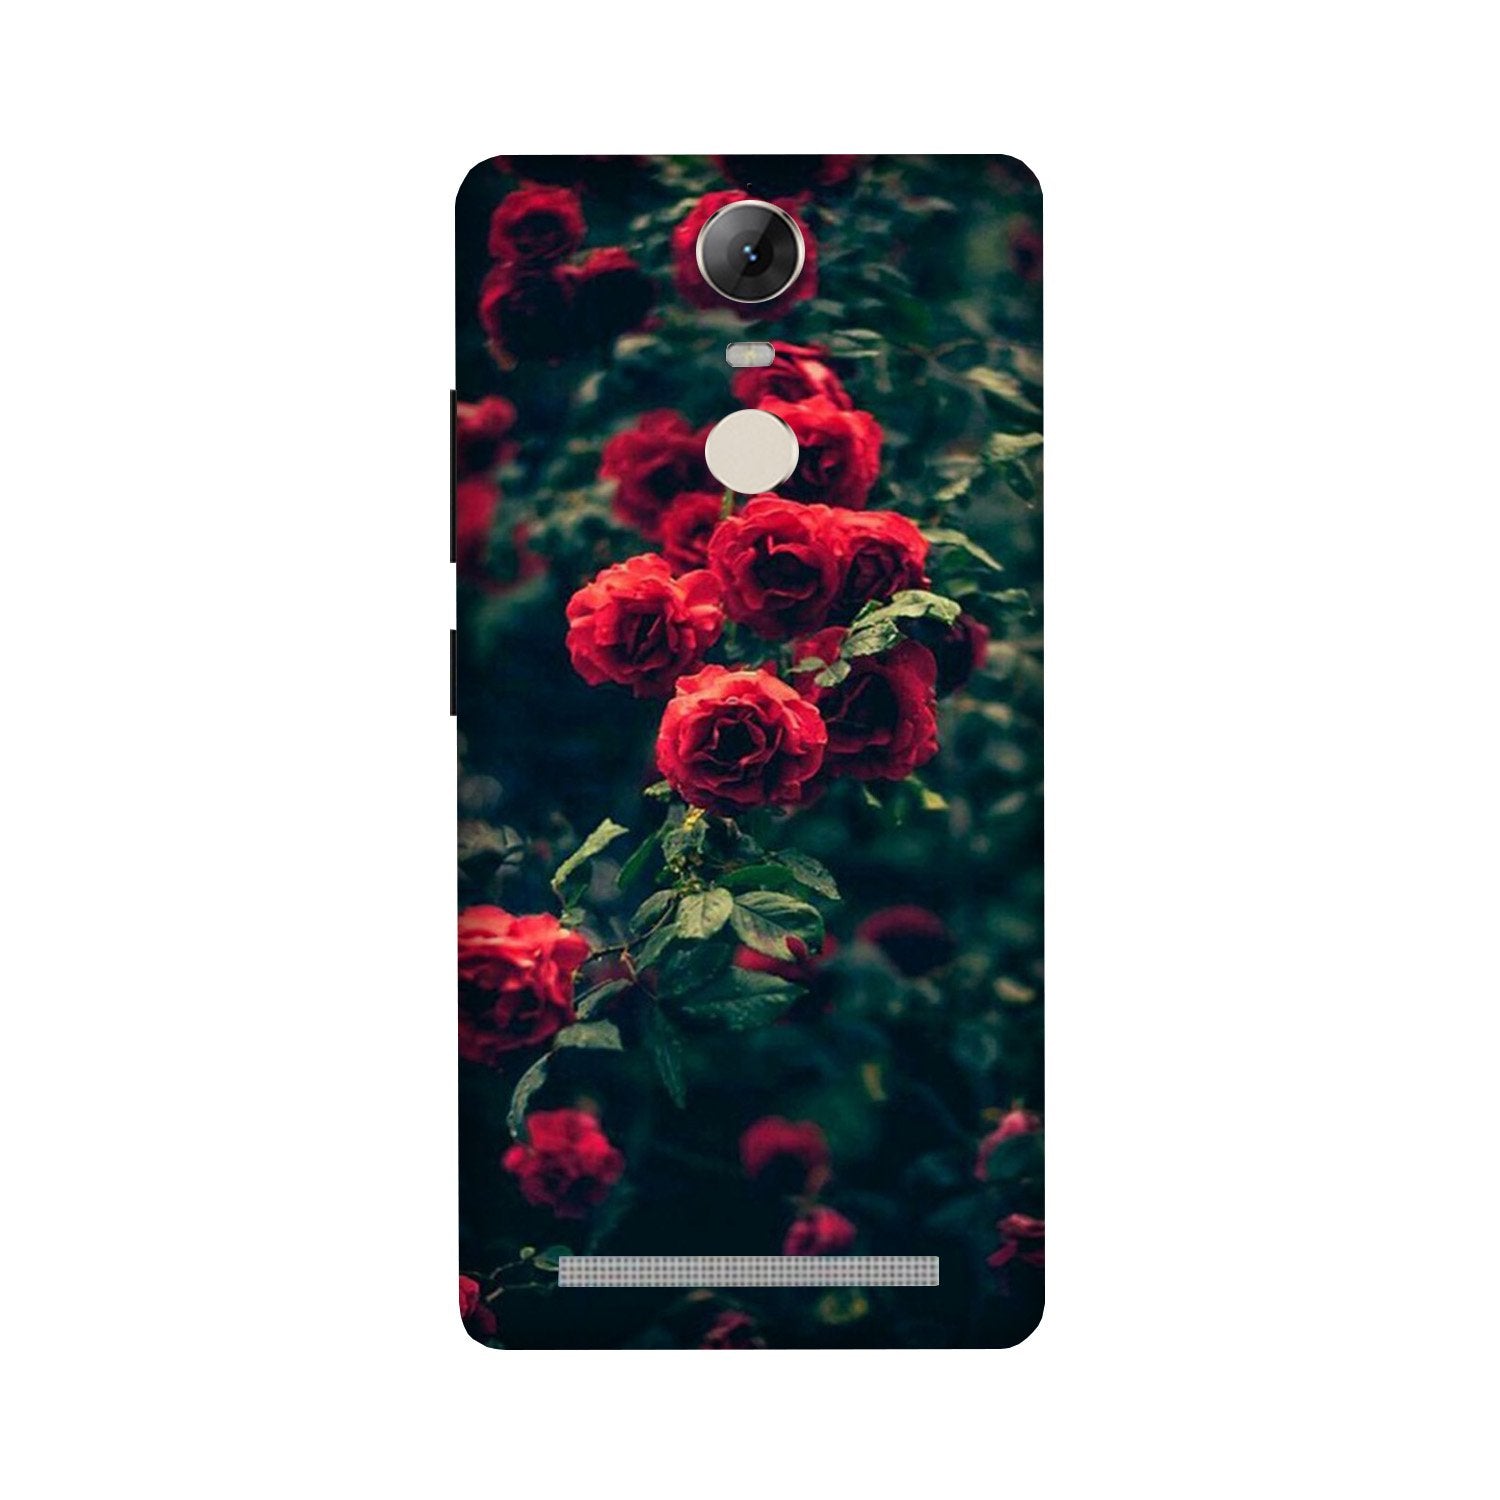 Red Rose Case for Lenovo Vibe K5 Note